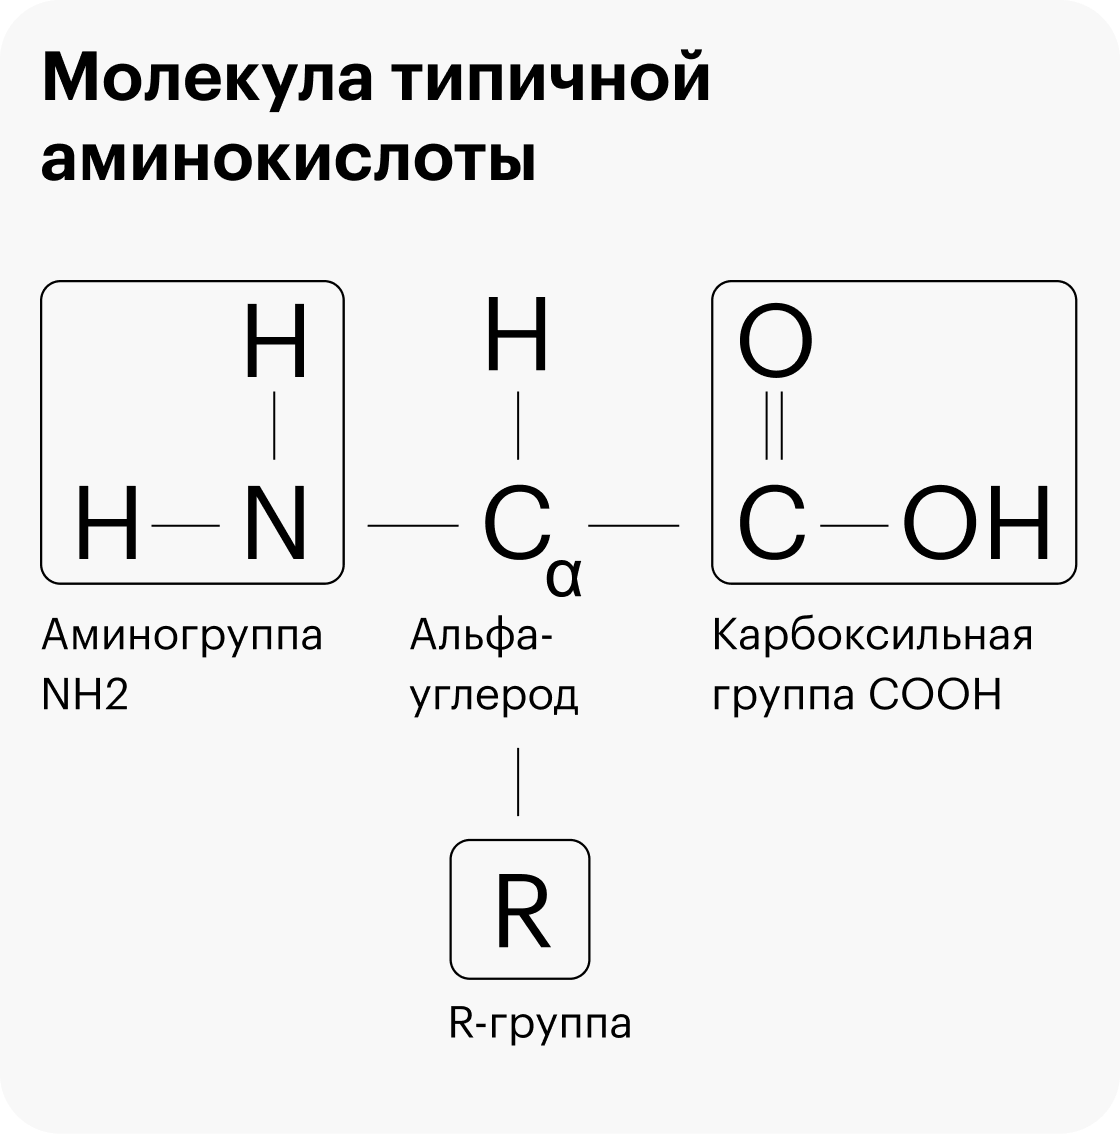 Типичная аминокислота: буквой R отмечена уникальная R-группа, а все остальное — стандартный «скелет» с альфа-углеродом С в основе